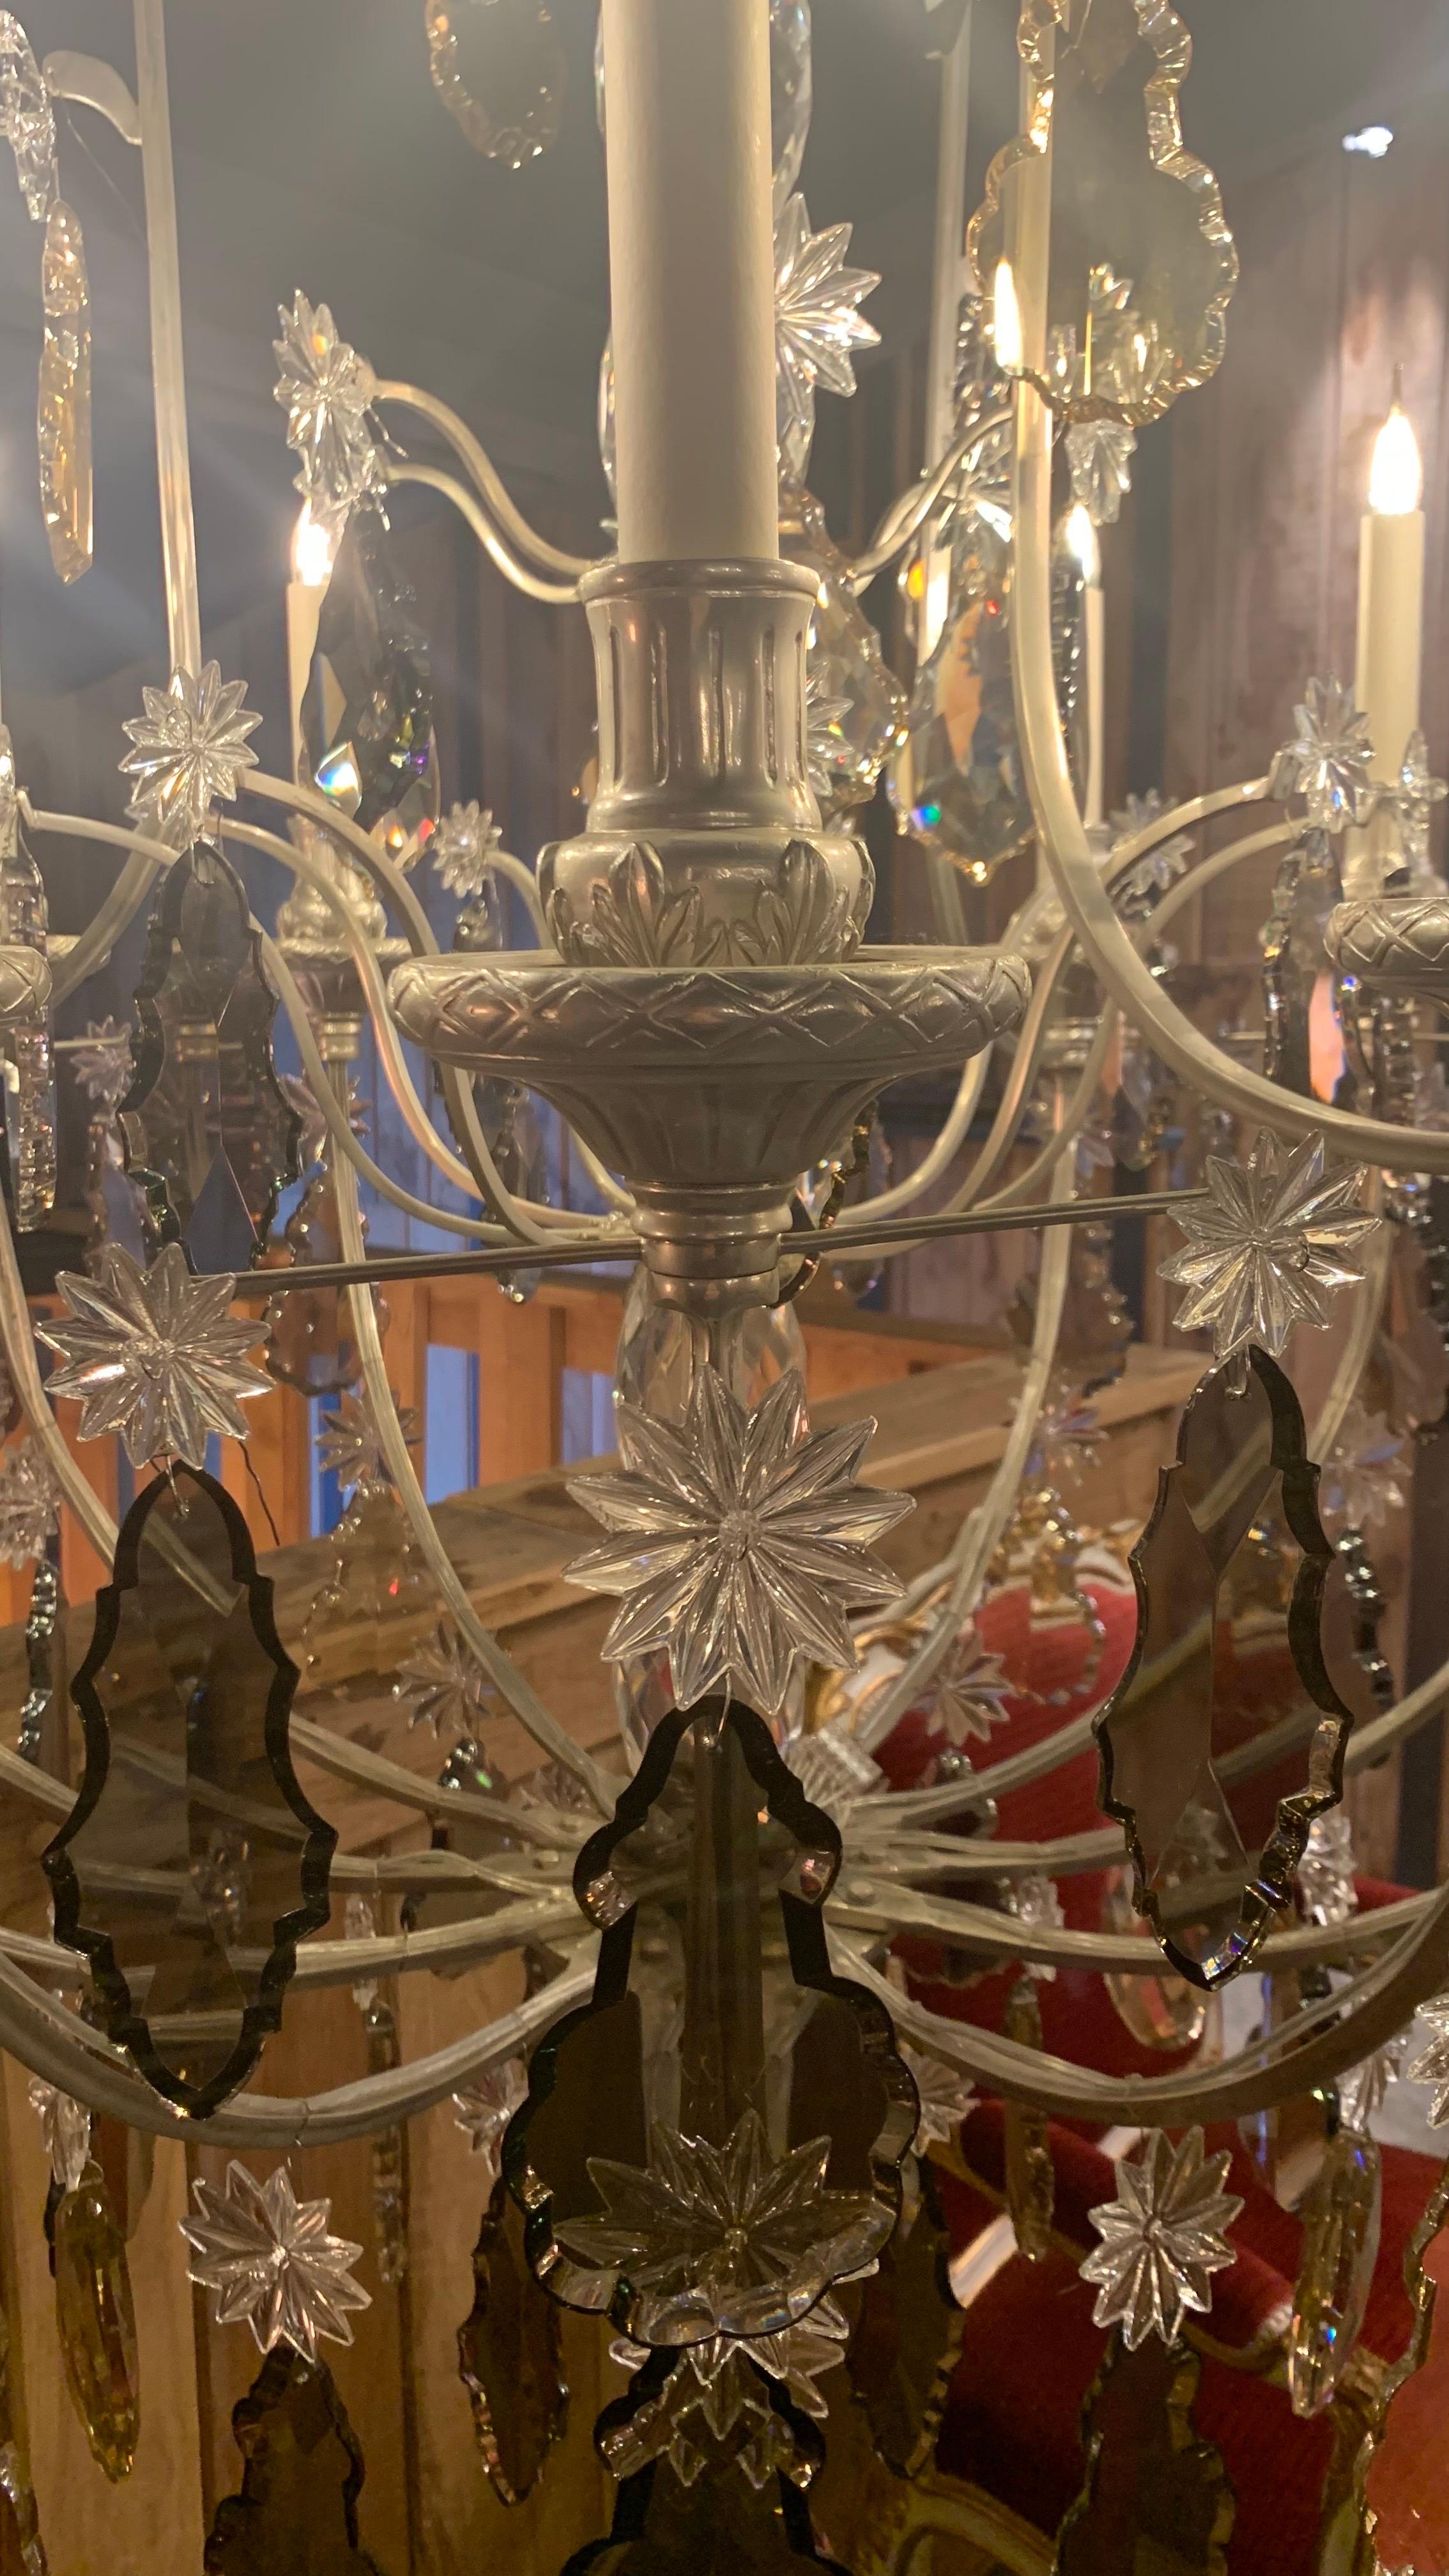 Dieser Kronleuchter ist direkt von den symbolträchtigen Kronleuchtern des Spiegelsaals im Schloss von Versailles inspiriert.

Sie besteht aus einem zentralen, mit Kristallperlen verzierten Schaft, der von einer geigenförmigen Struktur umgeben